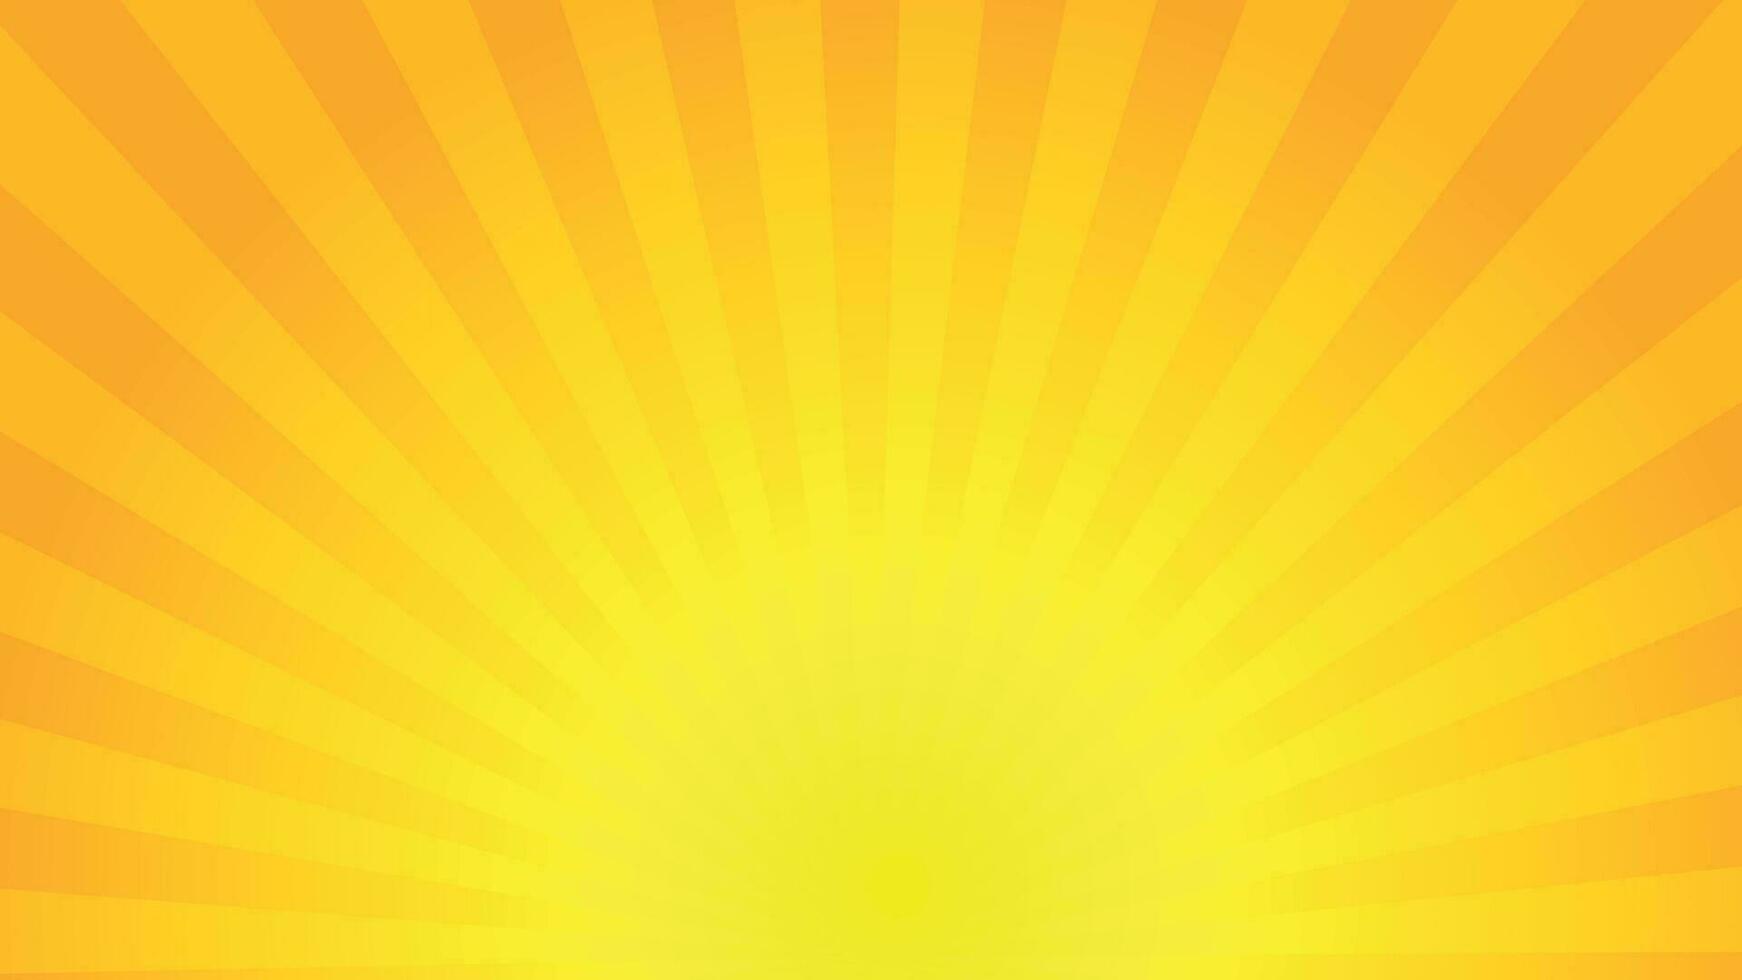 gul sunburst bakgrundsdesign vektor